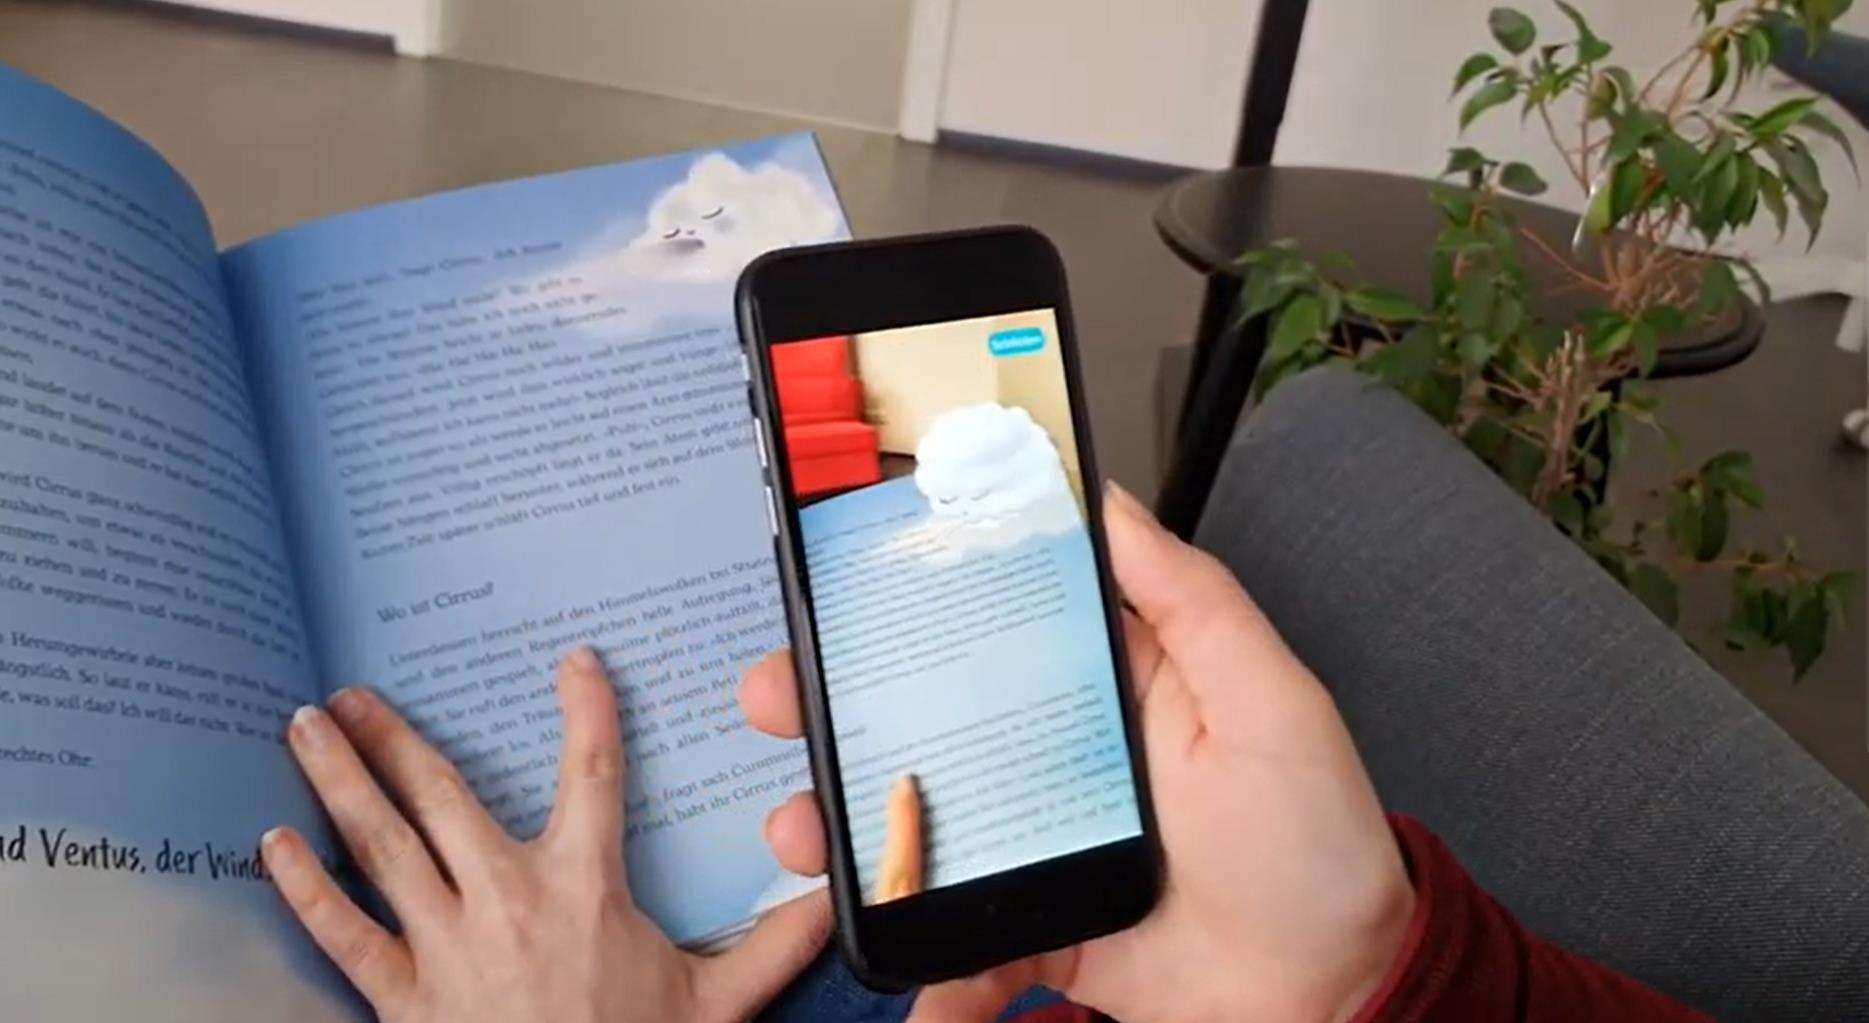 Die Kids wird es freuen - 3D Kinderbuch "Regentröpfchens Reise" virtueller Spaß dank App aus Jena